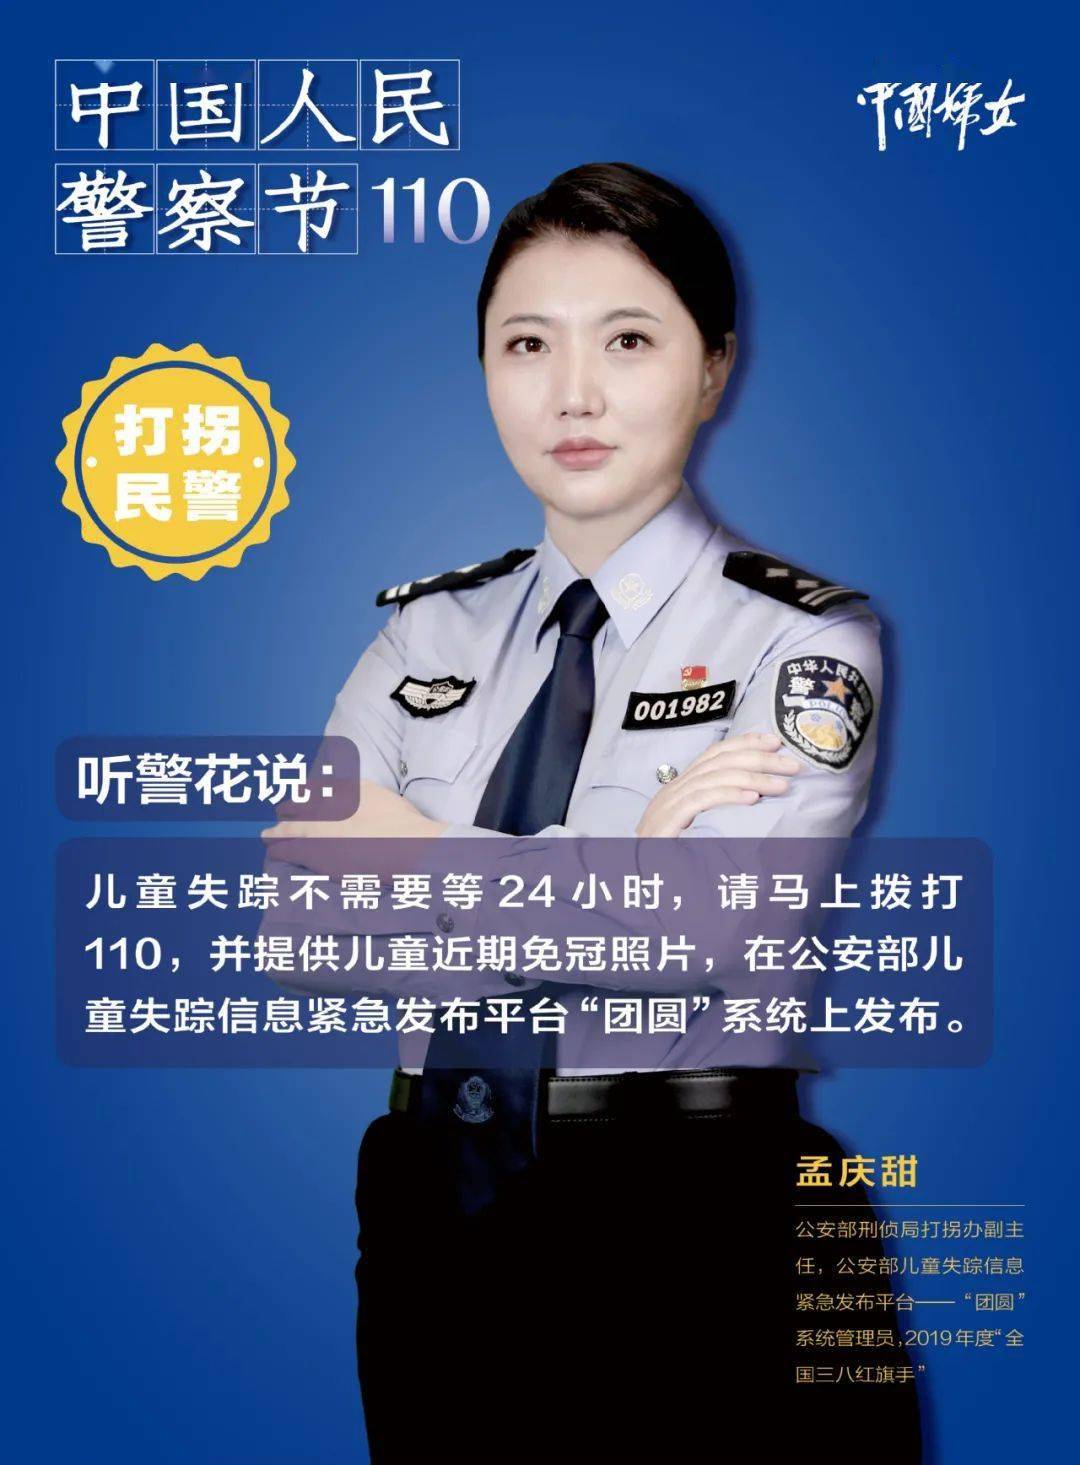 致敬中国女警!